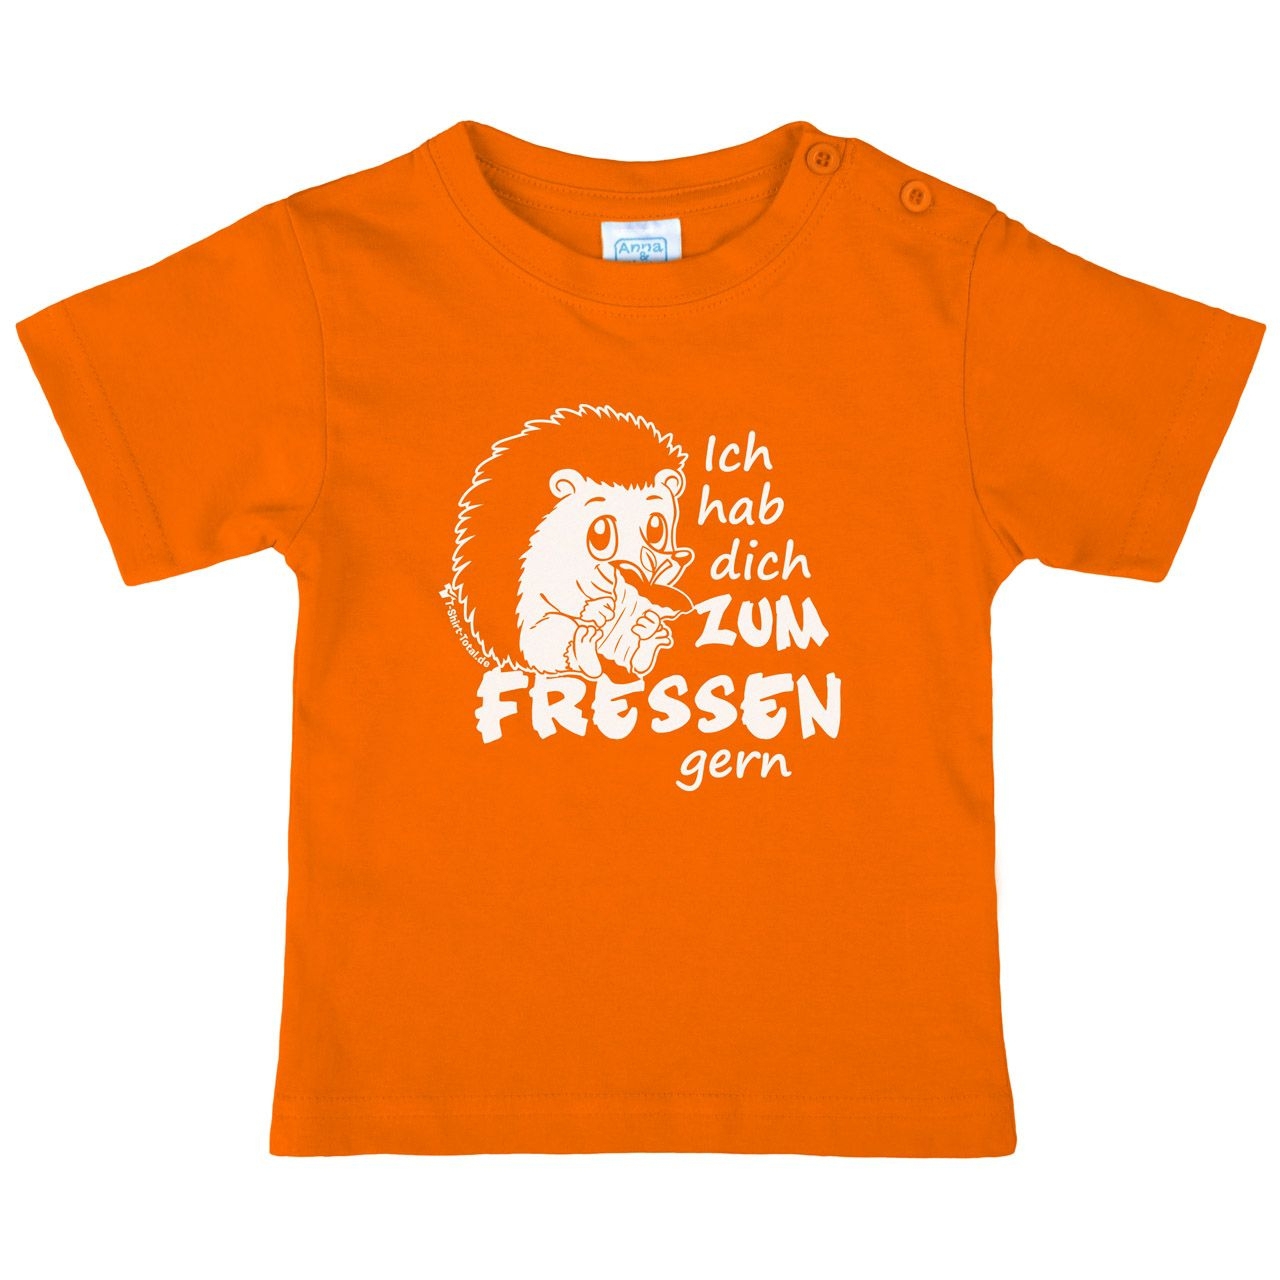 Zum fressen gern Kinder T-Shirt orange 80 / 86